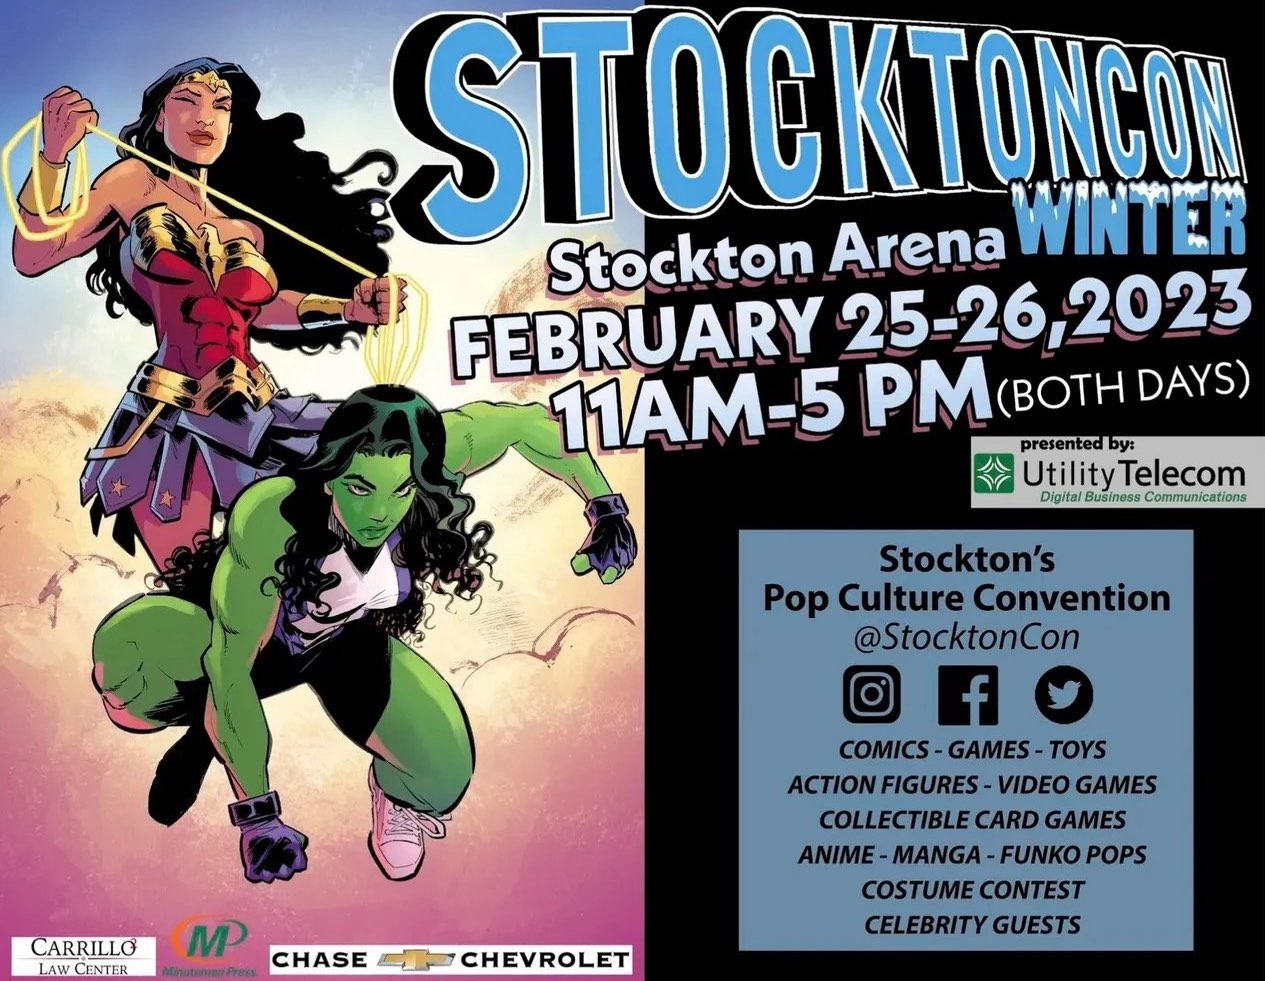 StocktonCon Winter - Saturday at Stockton Arena